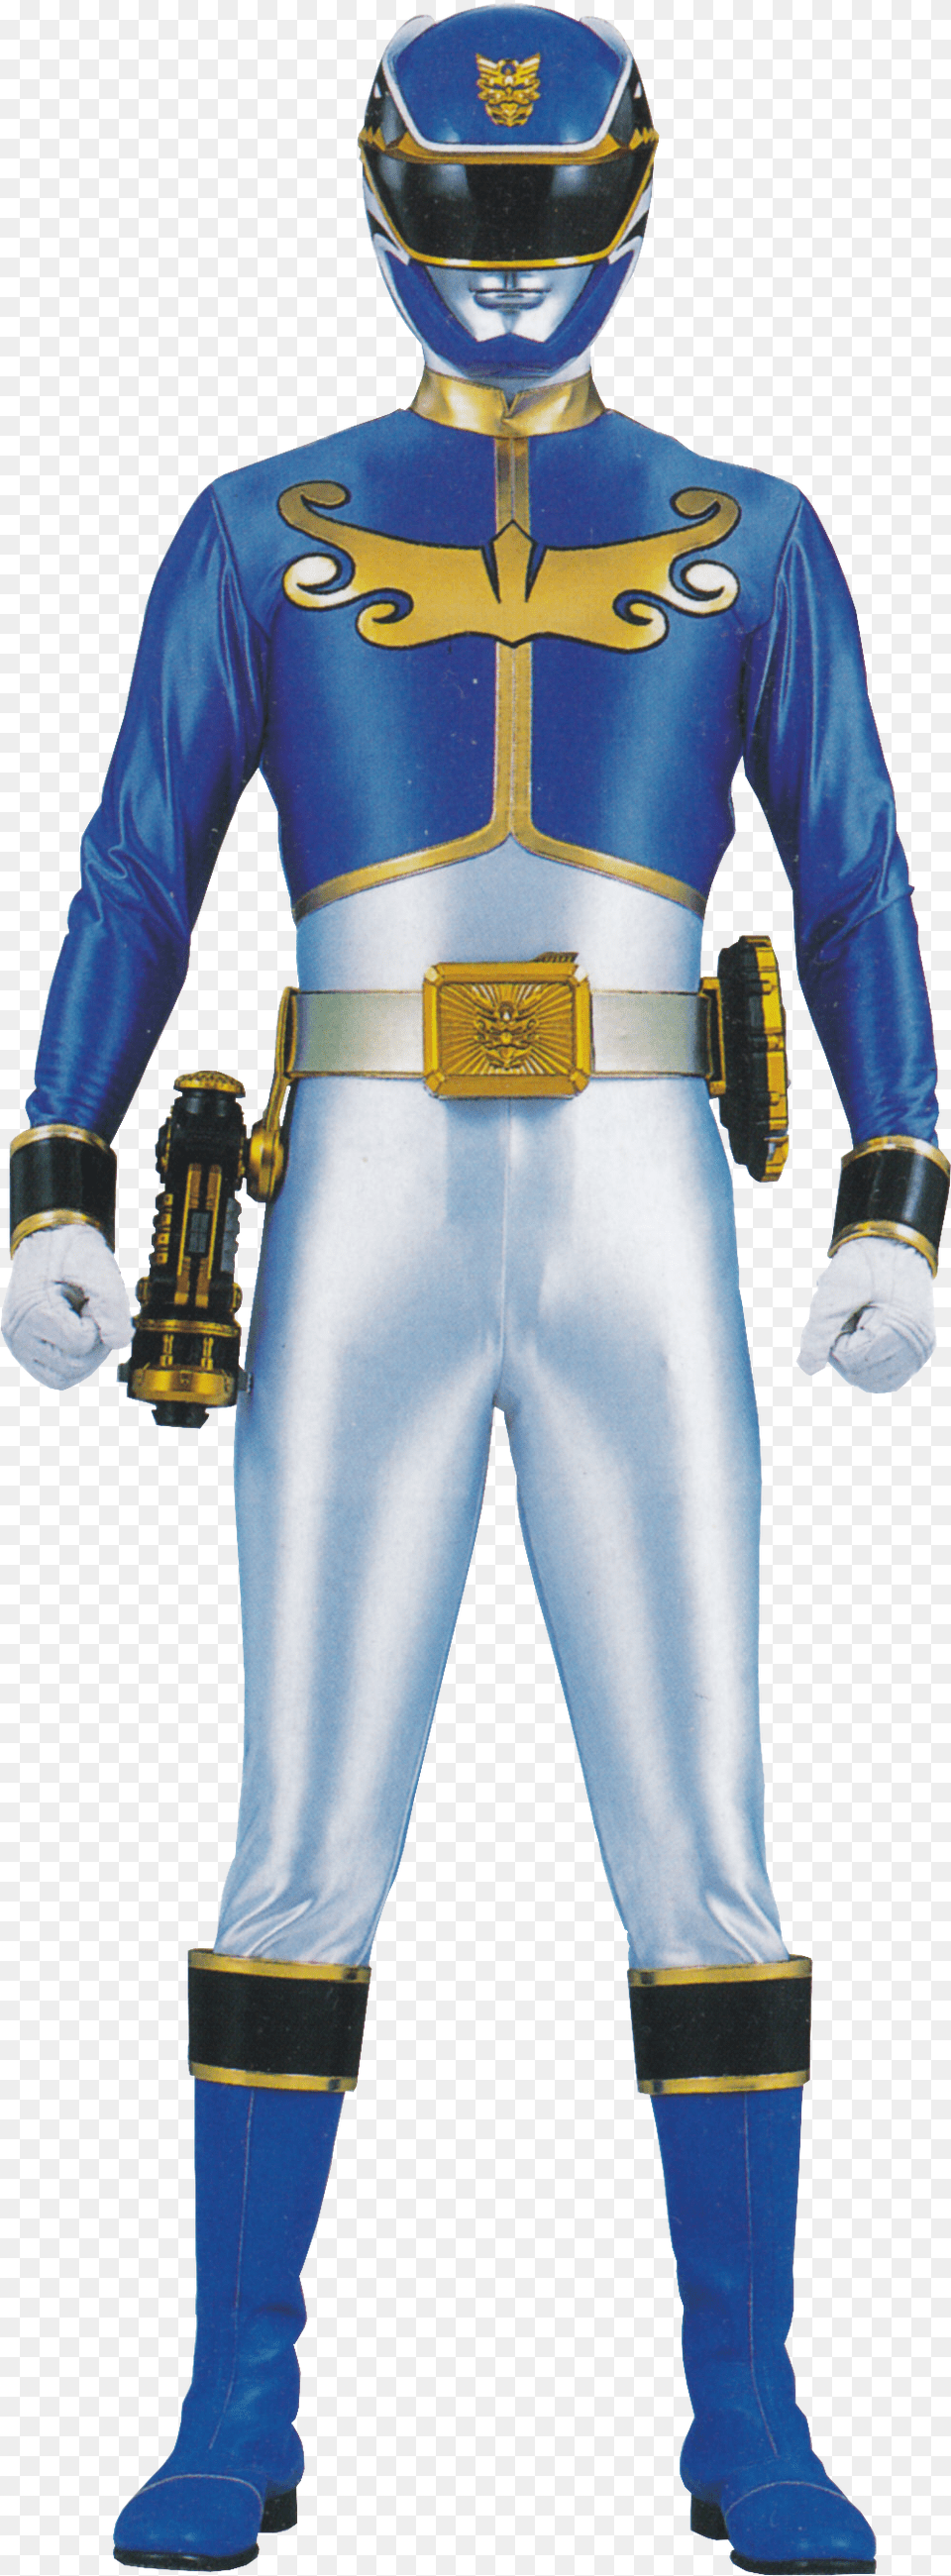 Megaforce Noah Carver 01 Blue Megaforce Ranger, Person, Clothing, Costume, Adult Free Png Download